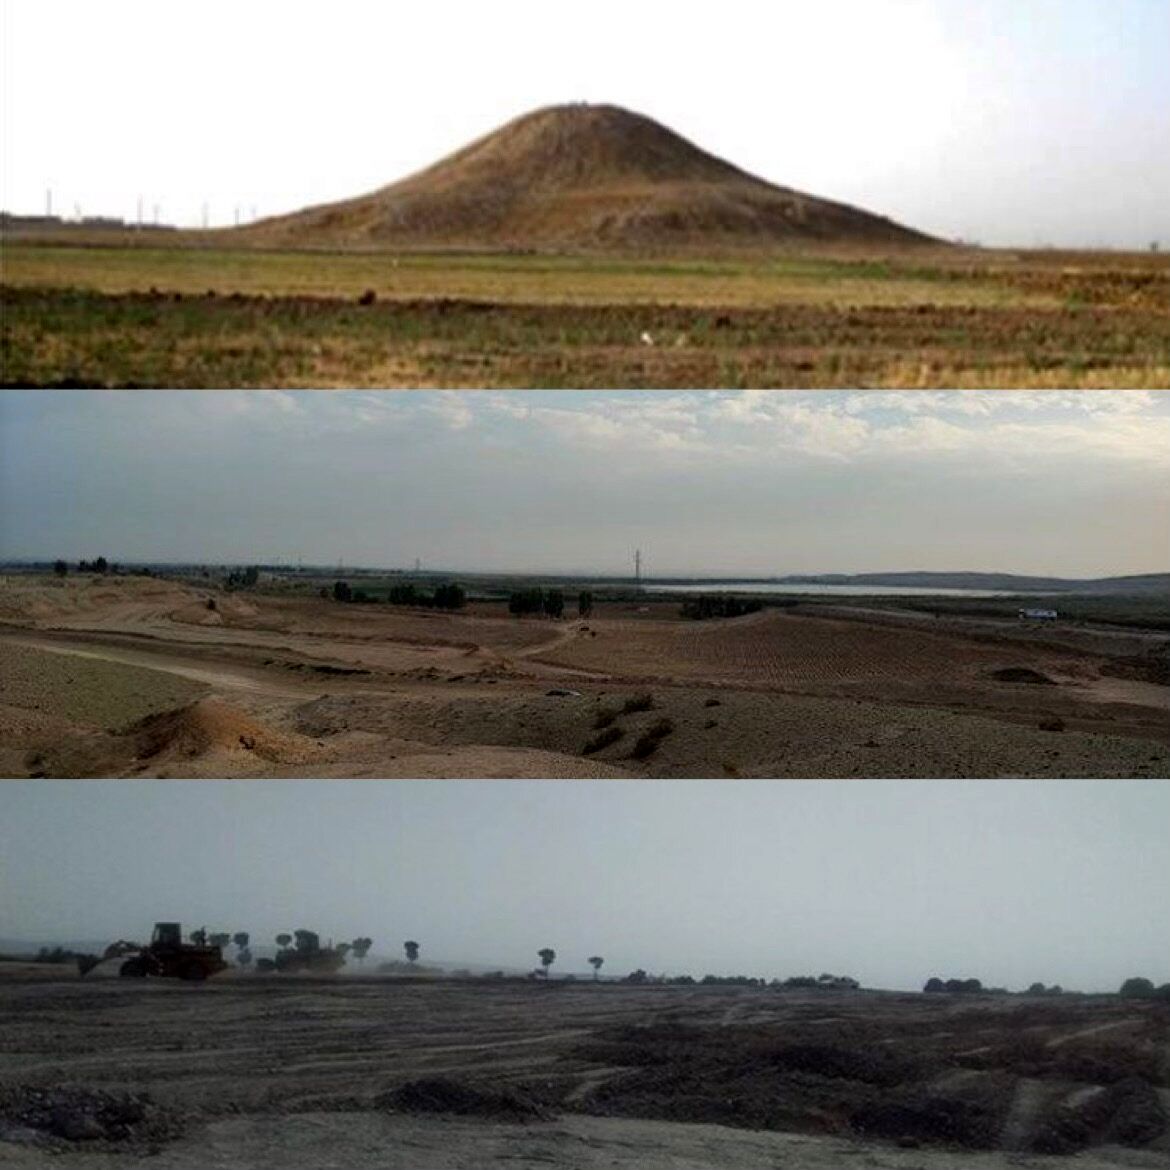 ماجرای غیب شدن تپه ۷ هزار ساله در شهرری چیست؟